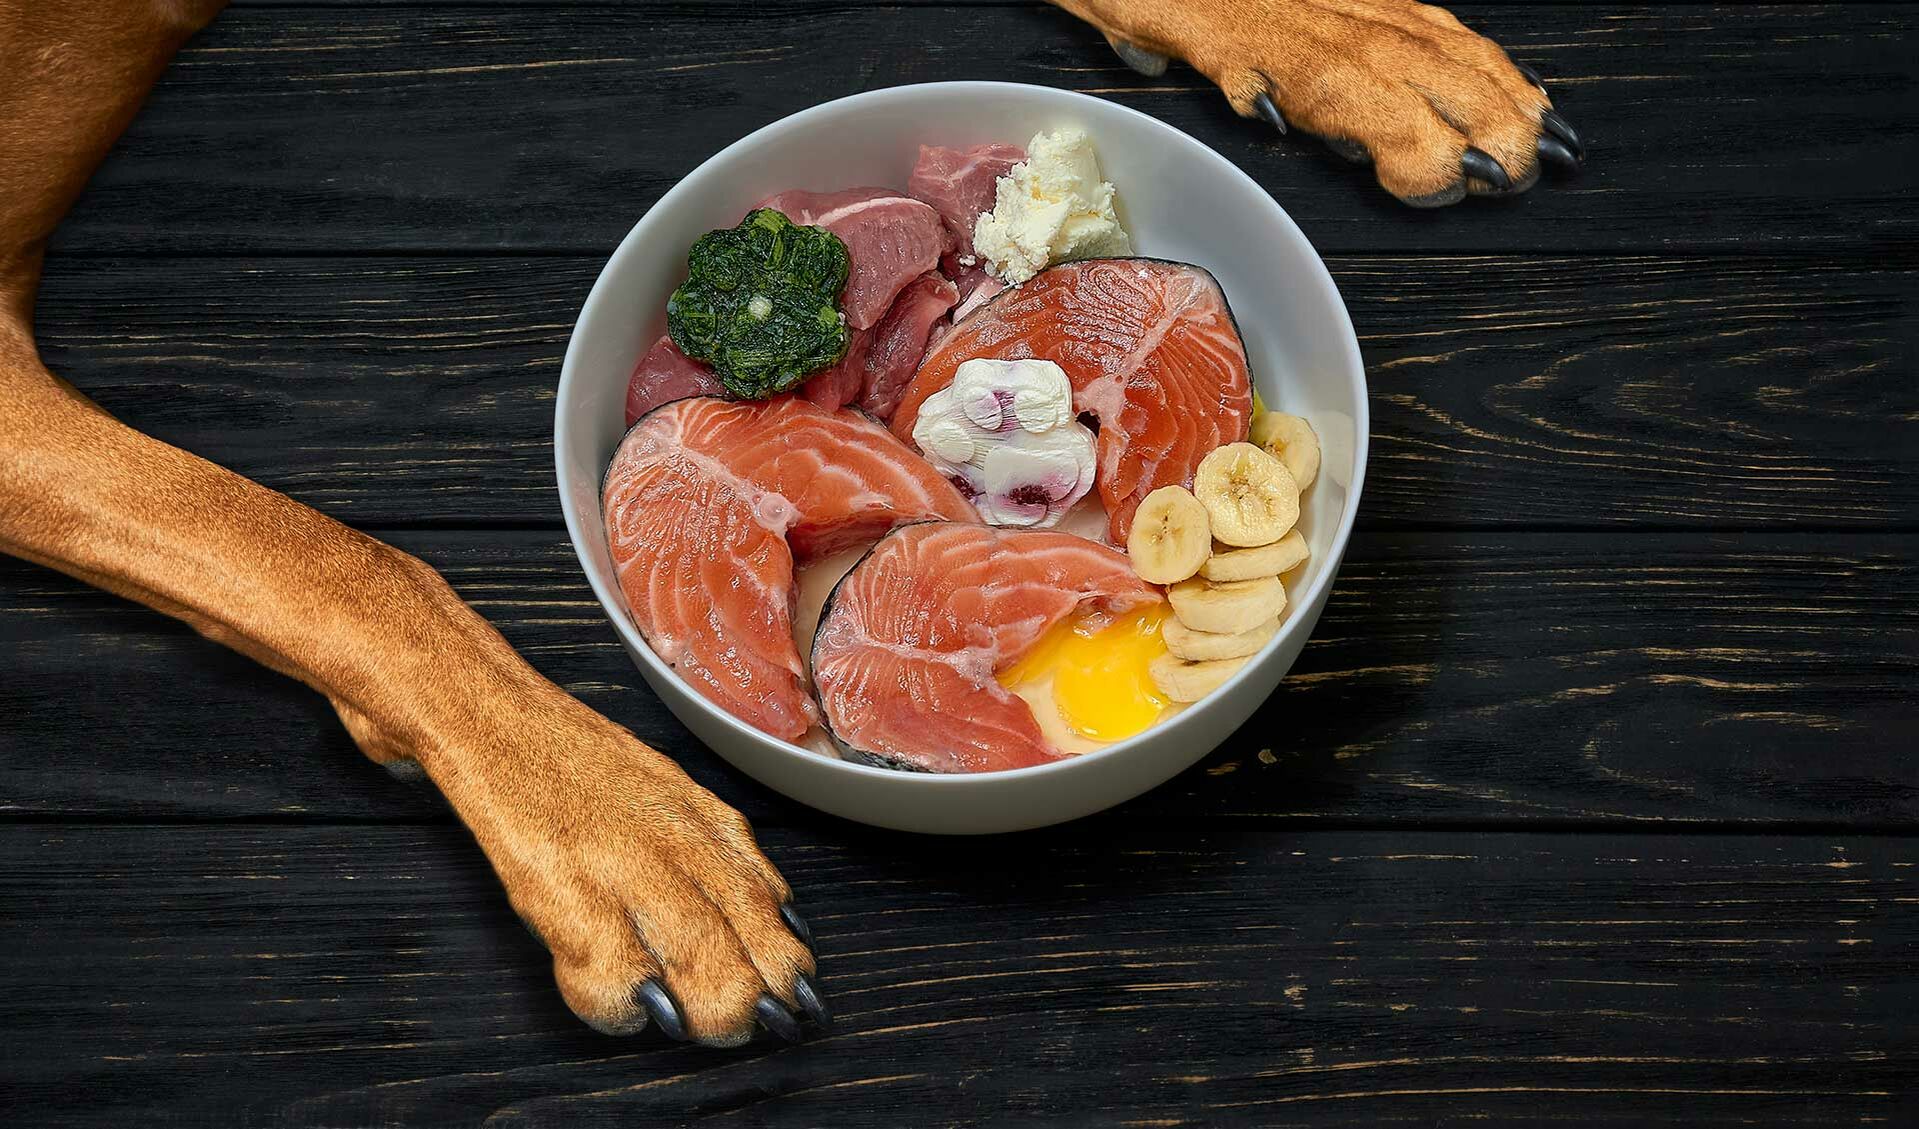 Eine Schale mit frischem Fisch, Fleisch, Quark, Ei sowie einem Nahrungsergänzungsmittel für Hundefutter.